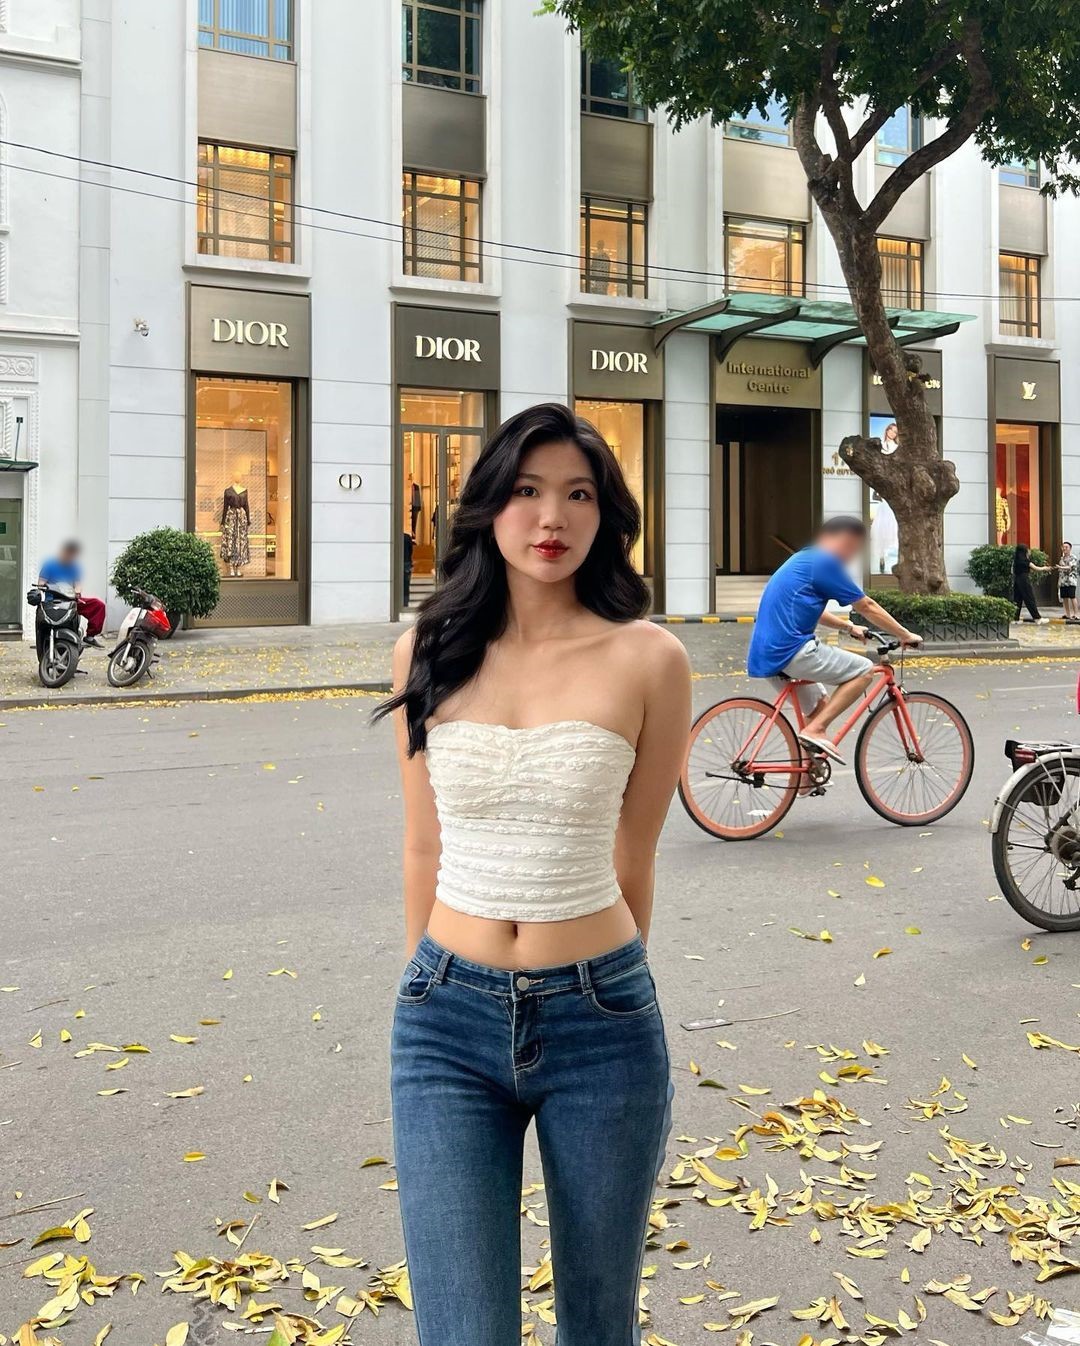 Danh tính cô gái mặc khoe body trên đường phố Hà Nội khiến nhiều người phải ngoái nhìn - 3